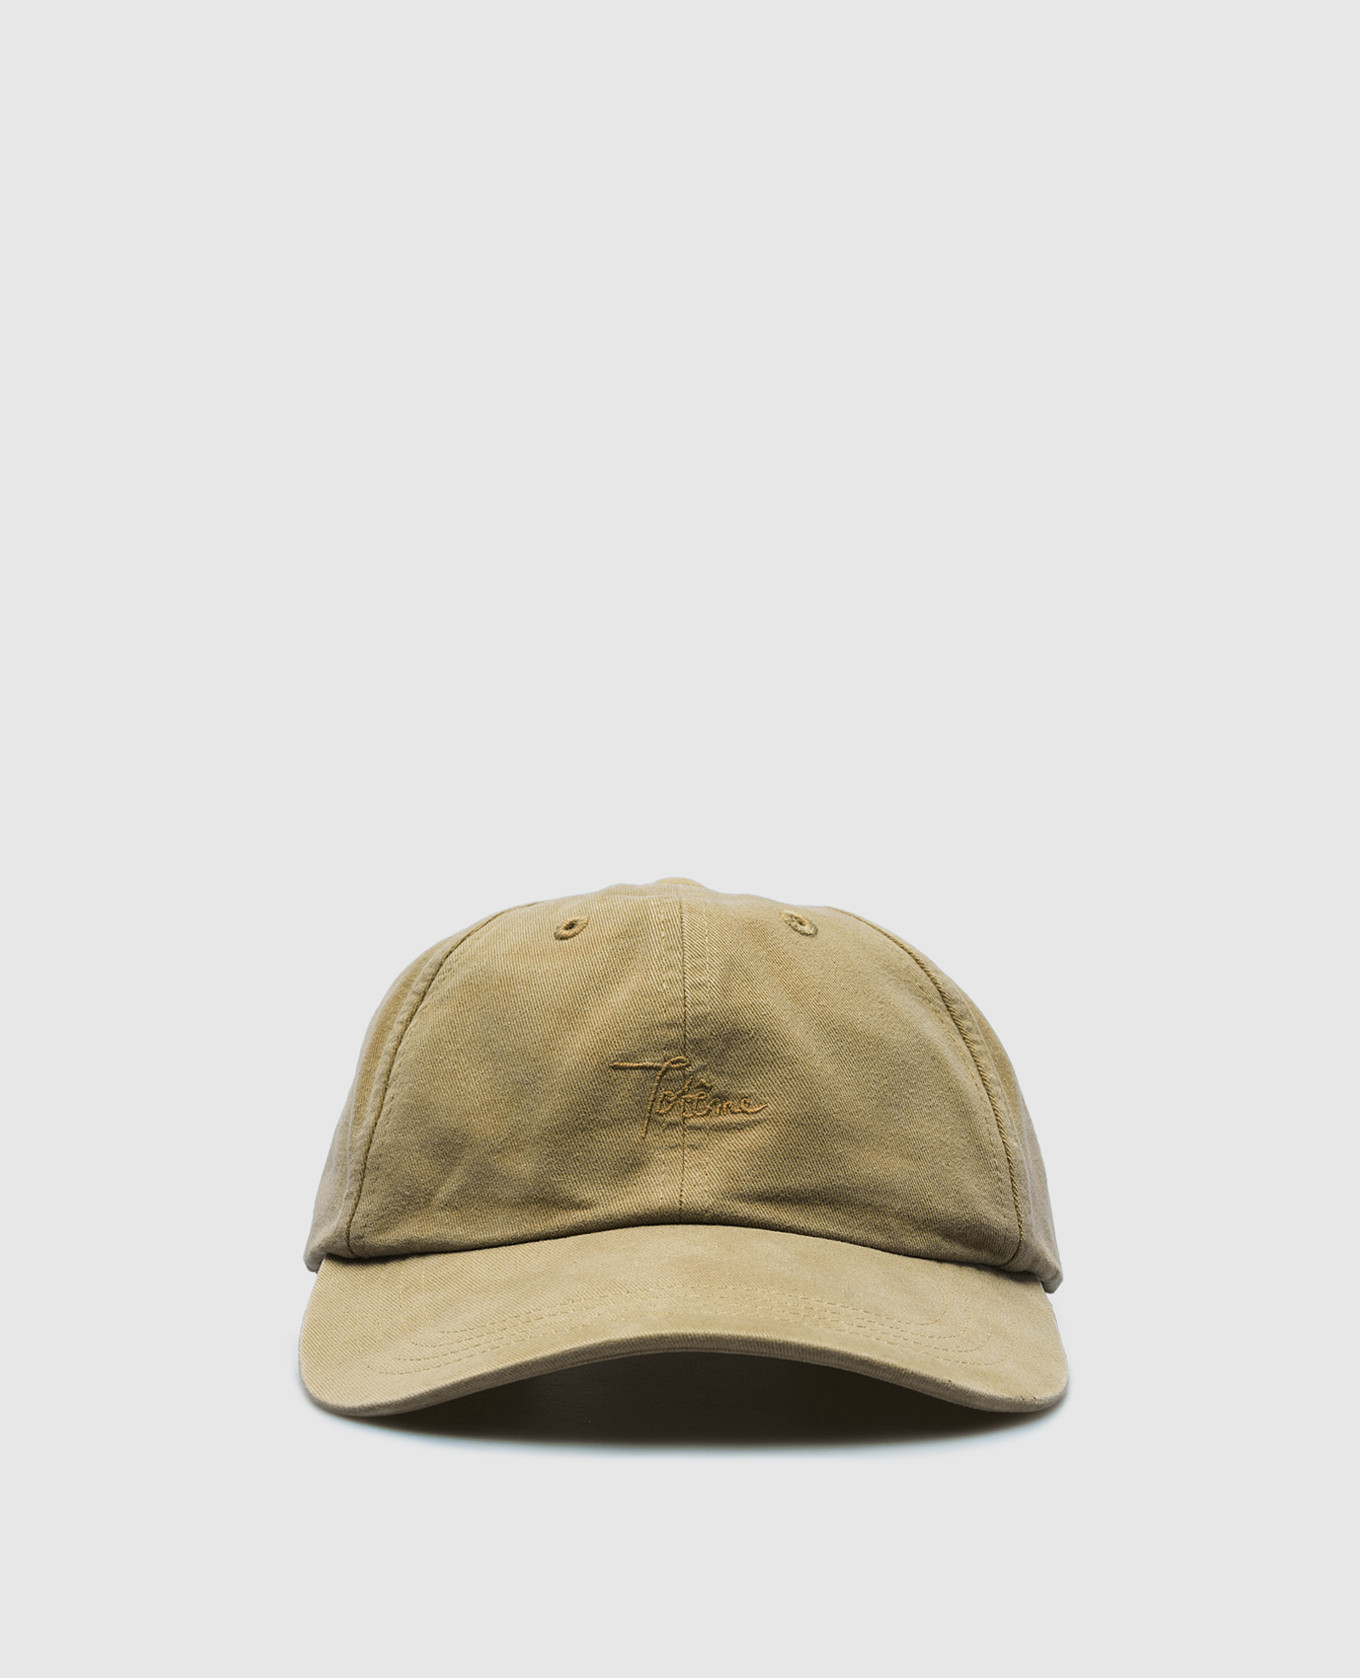 Khaki cap with logo